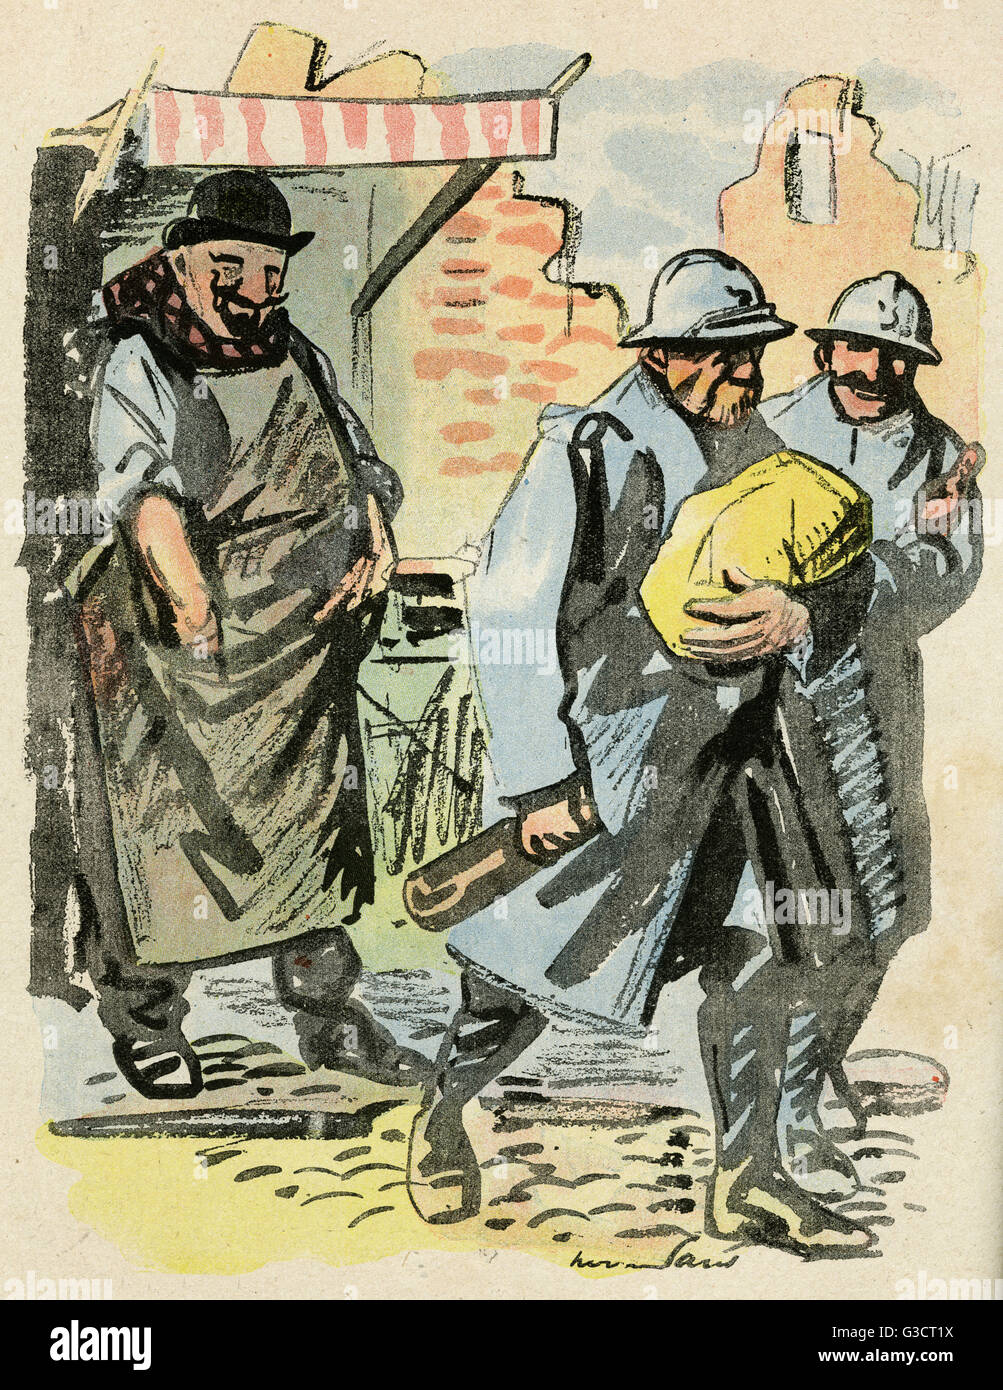 Cartoon, Fighting zone, WW1 Stock Photo